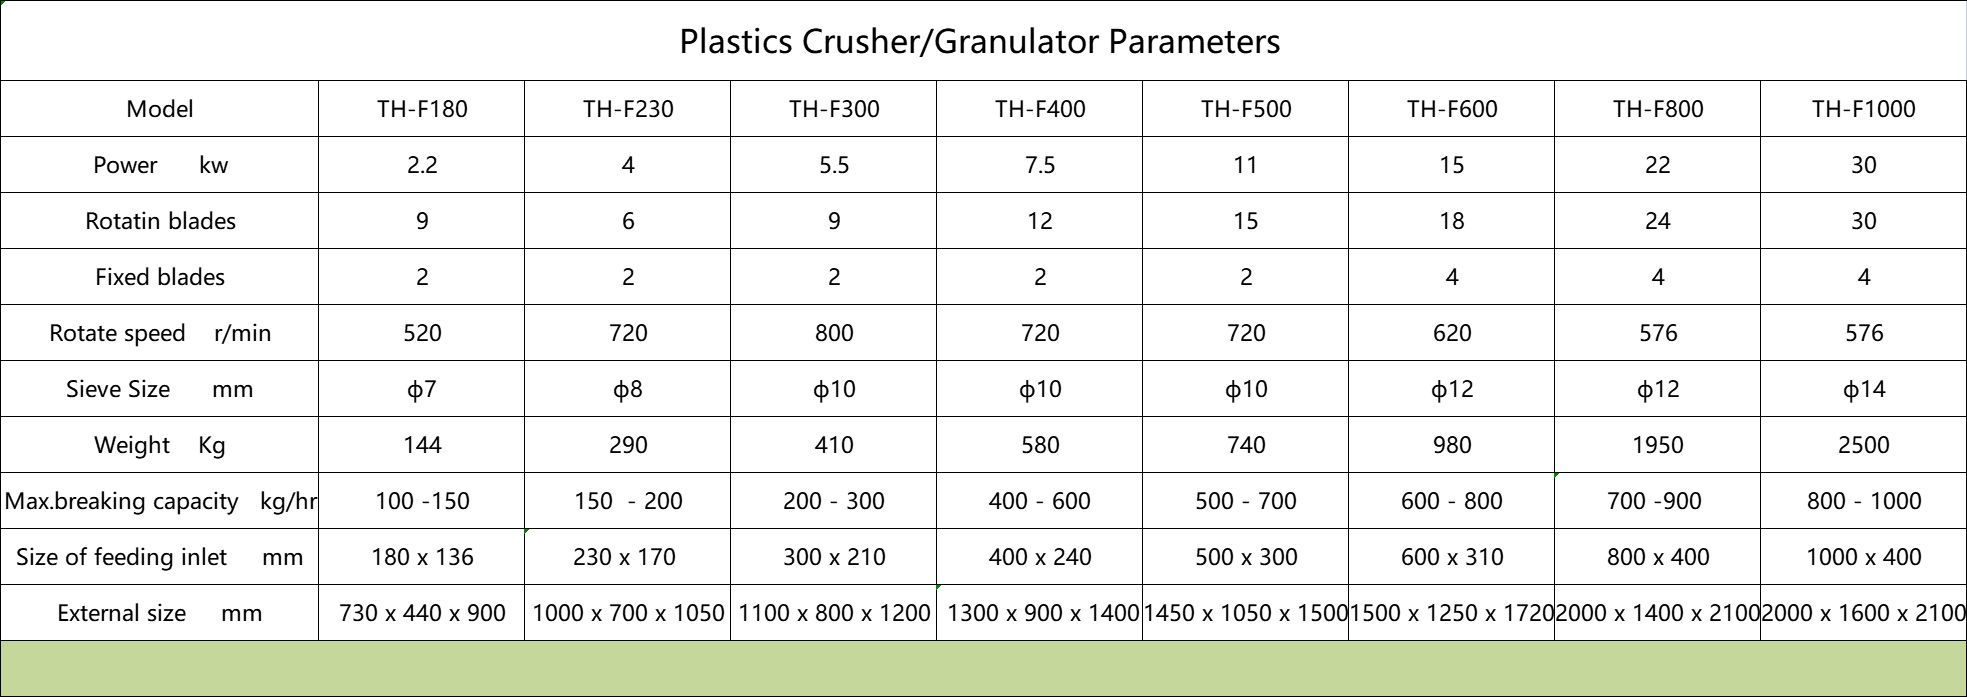 Plastic Crusher or Granulator Parameters